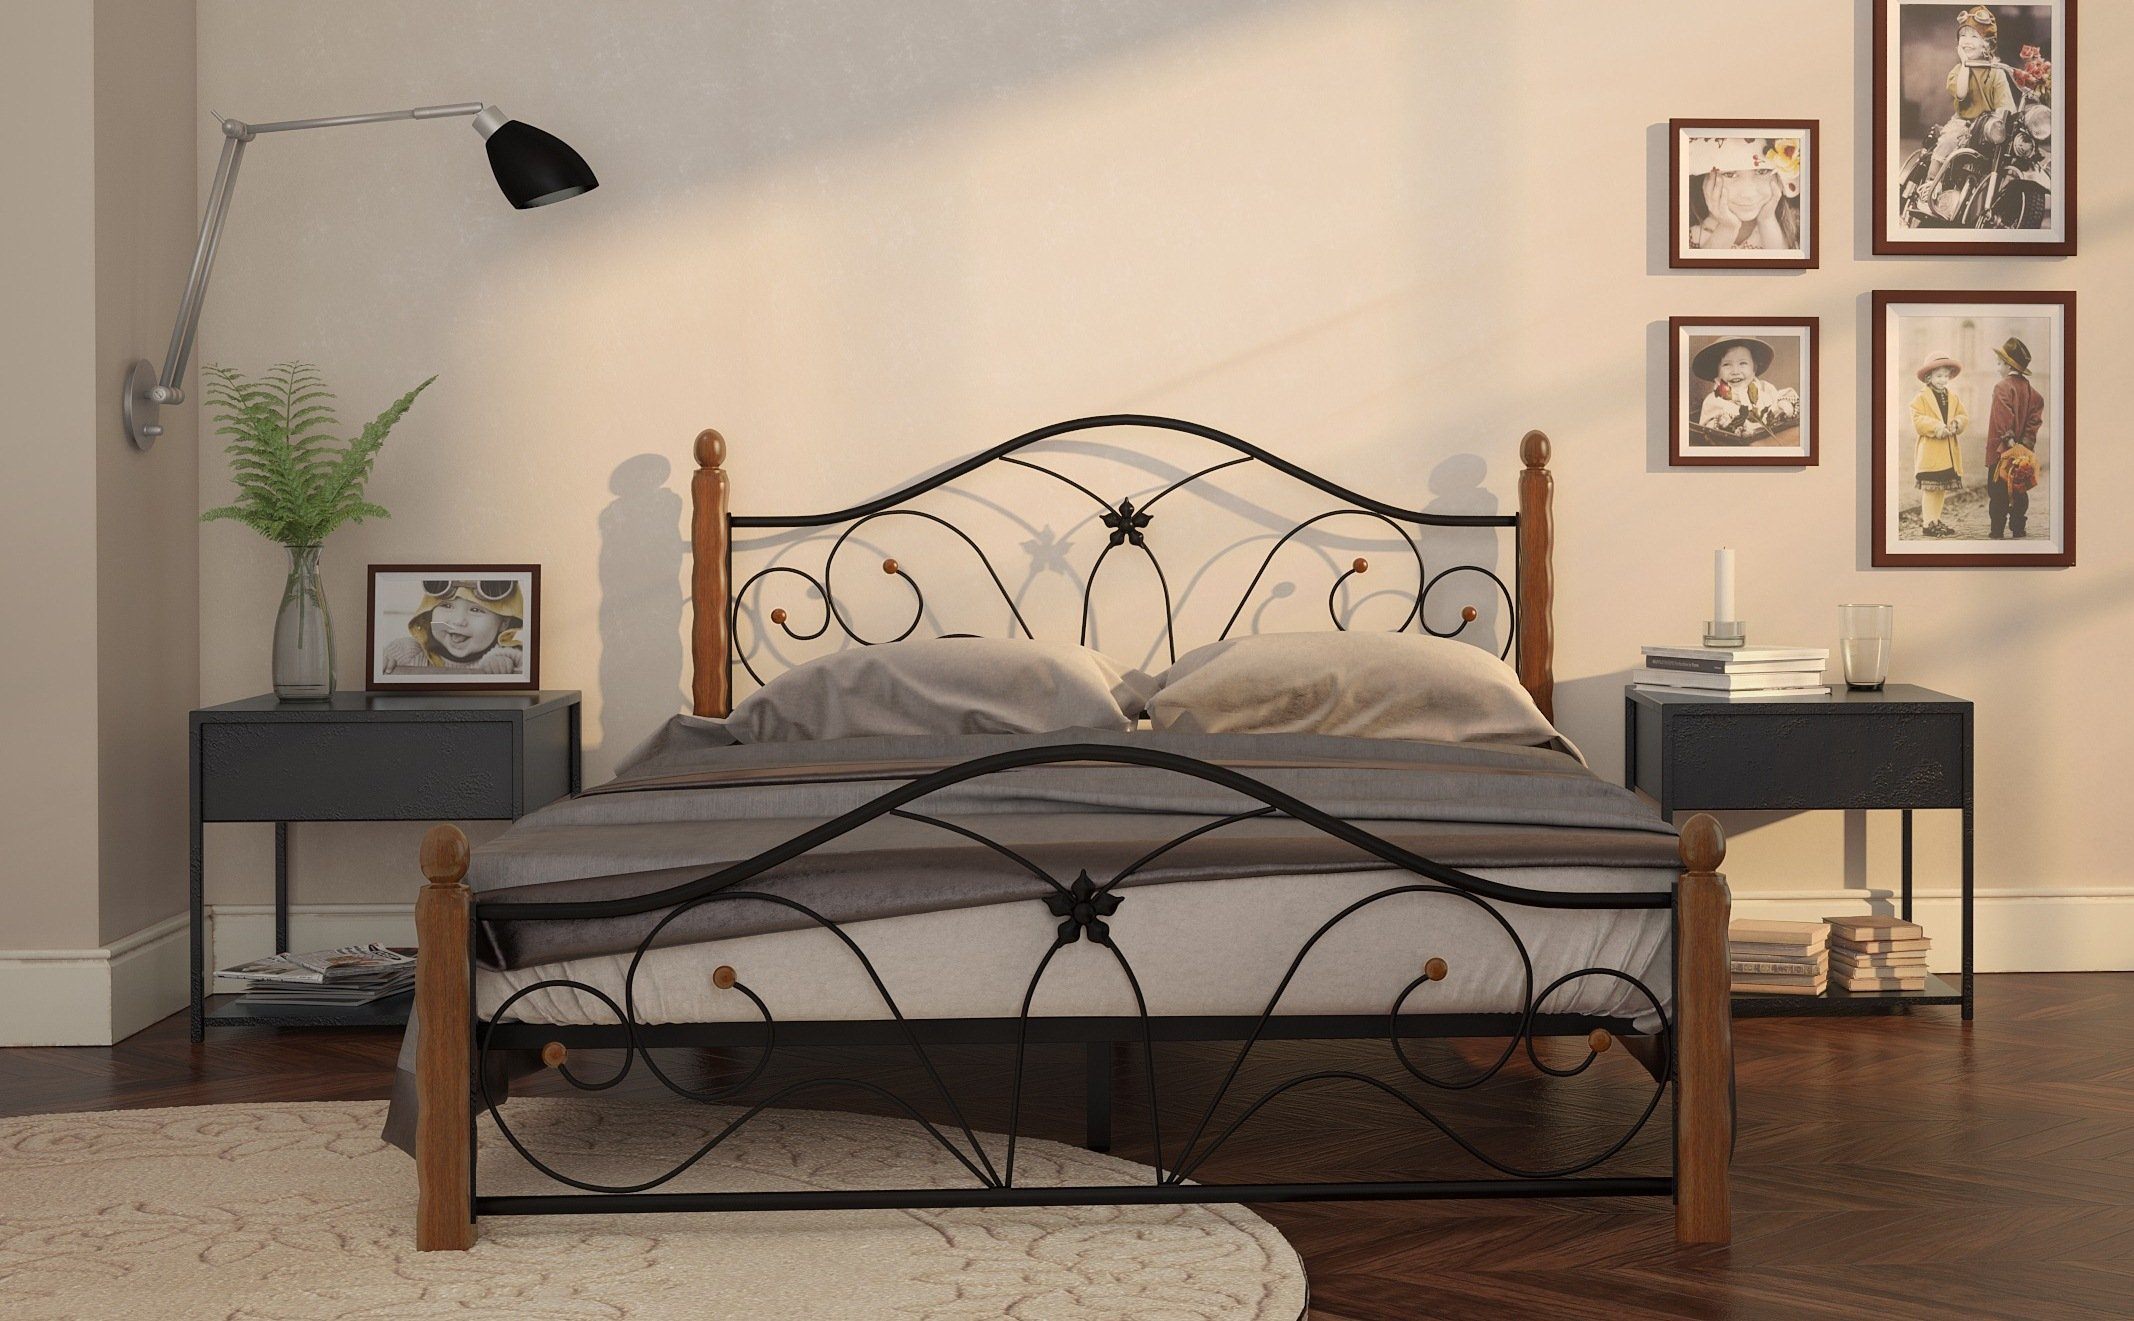 Спальня с кованой кроватью: разнообразие роскошных интерьеров